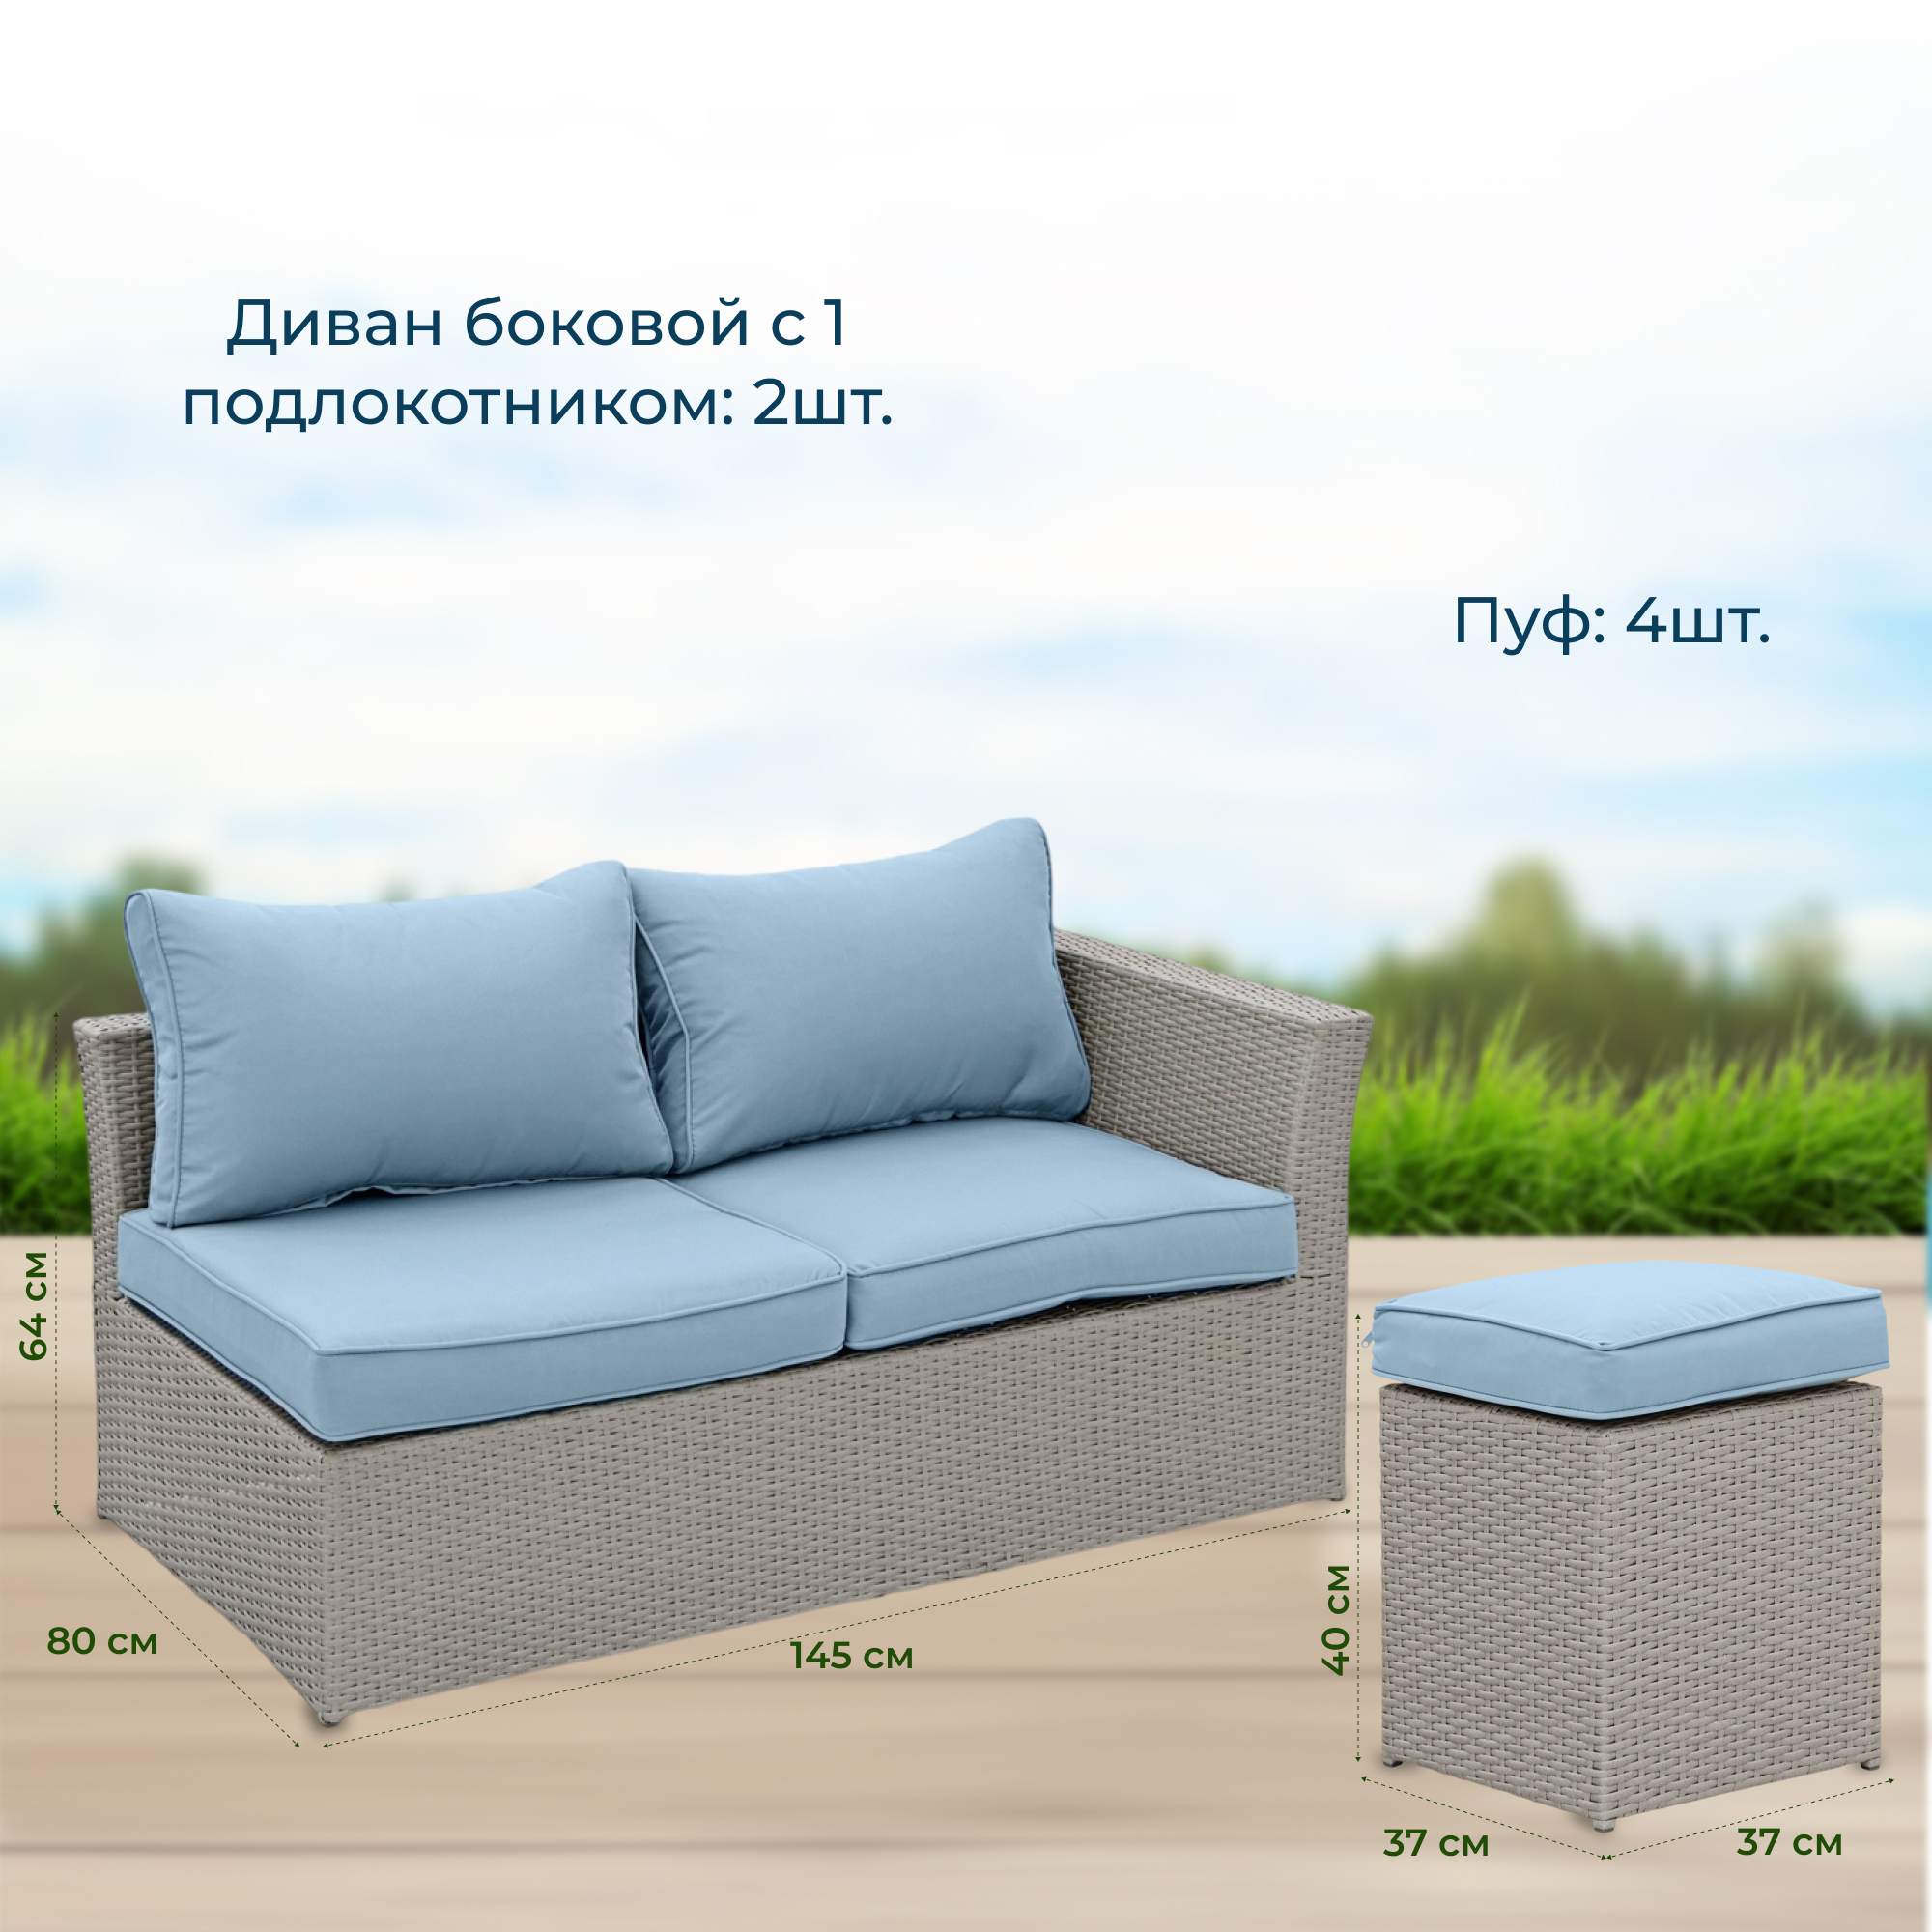 Комплект мебели Greenpatio 8 предметов серый, цвет голубой, размер 145х80х64 см - фото 4